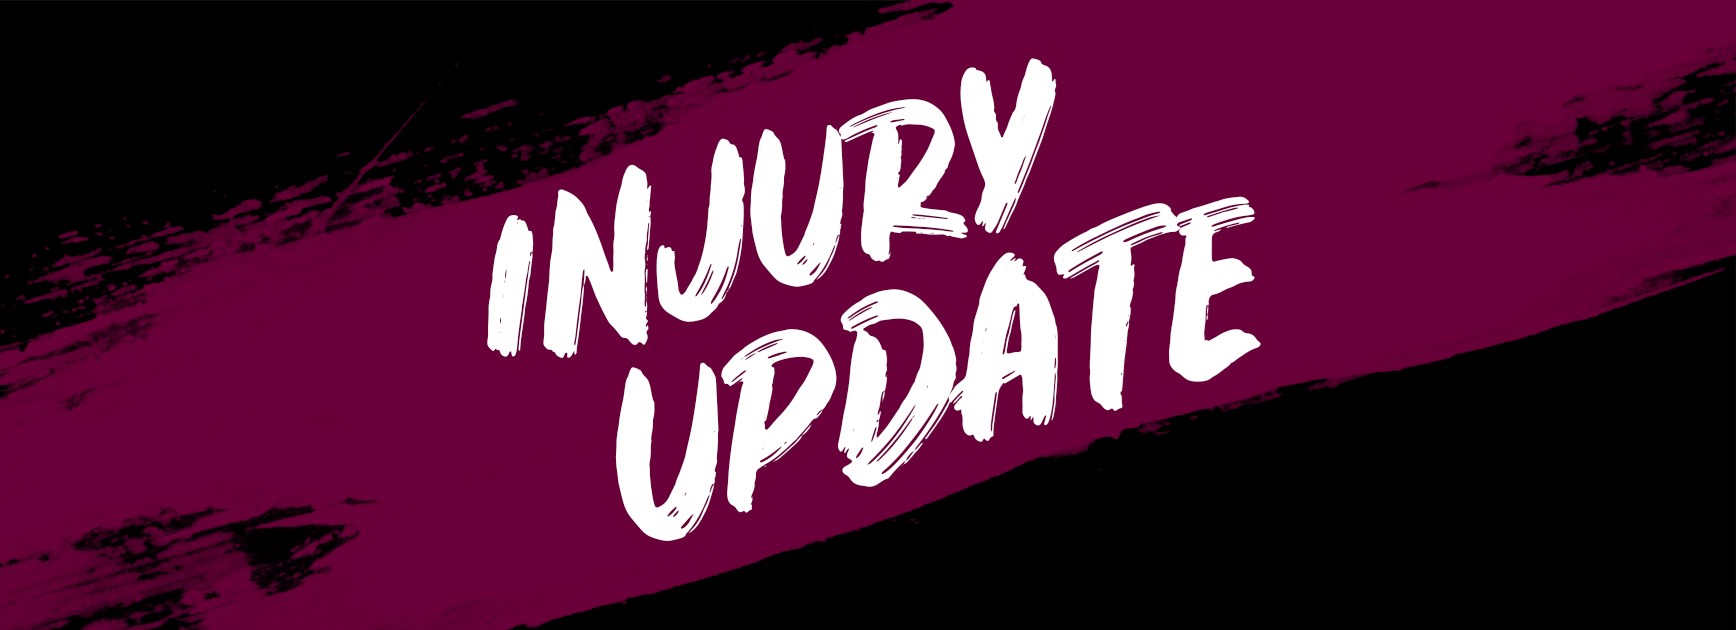 Injury update on Jonathan Wright